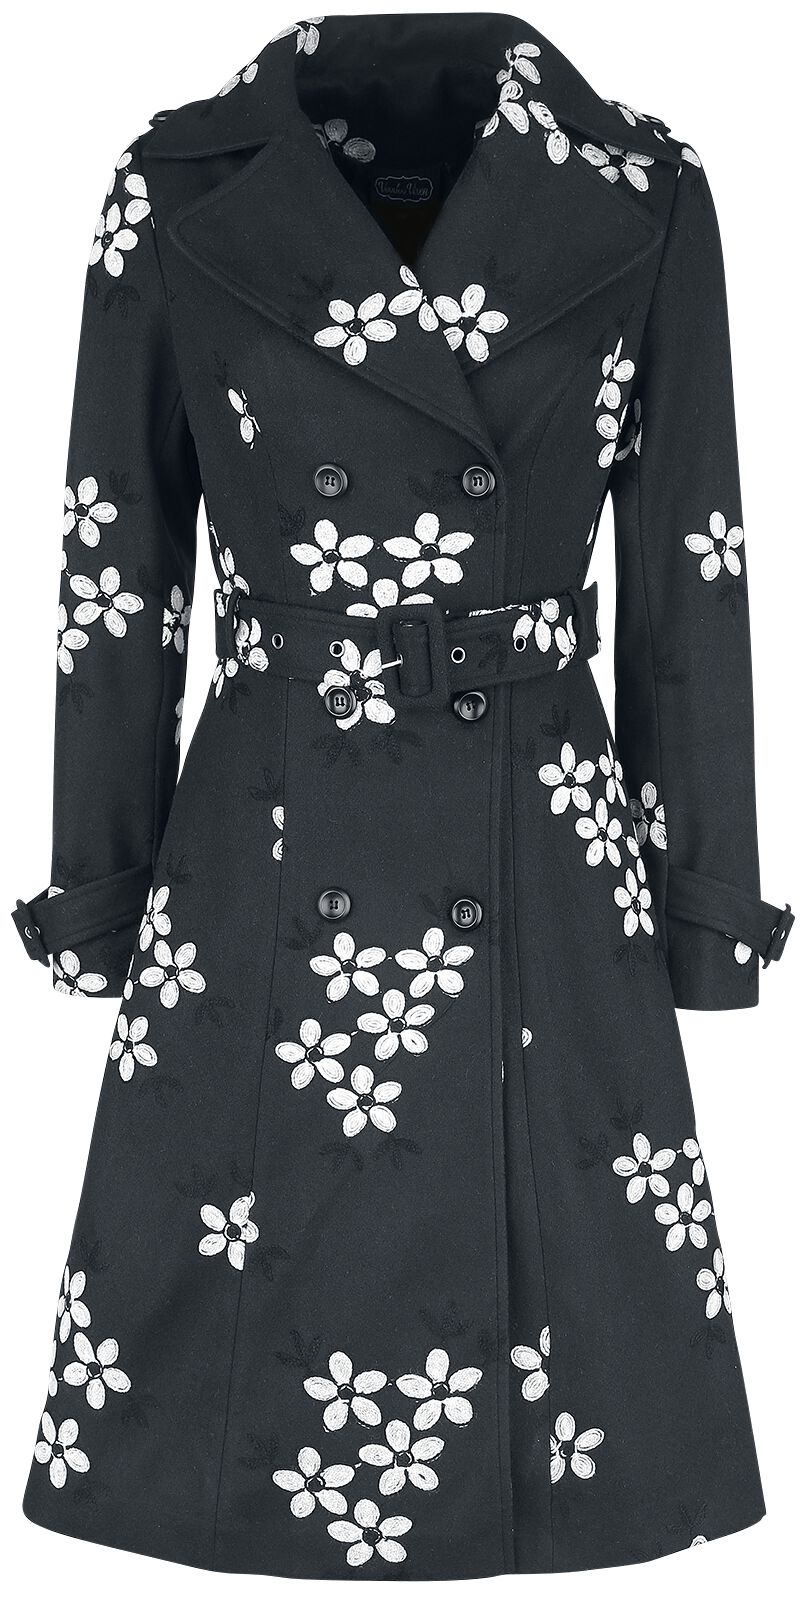 Marjorie Black Floral Jacket Mantel schwarz/weiß von Voodoo Vixen